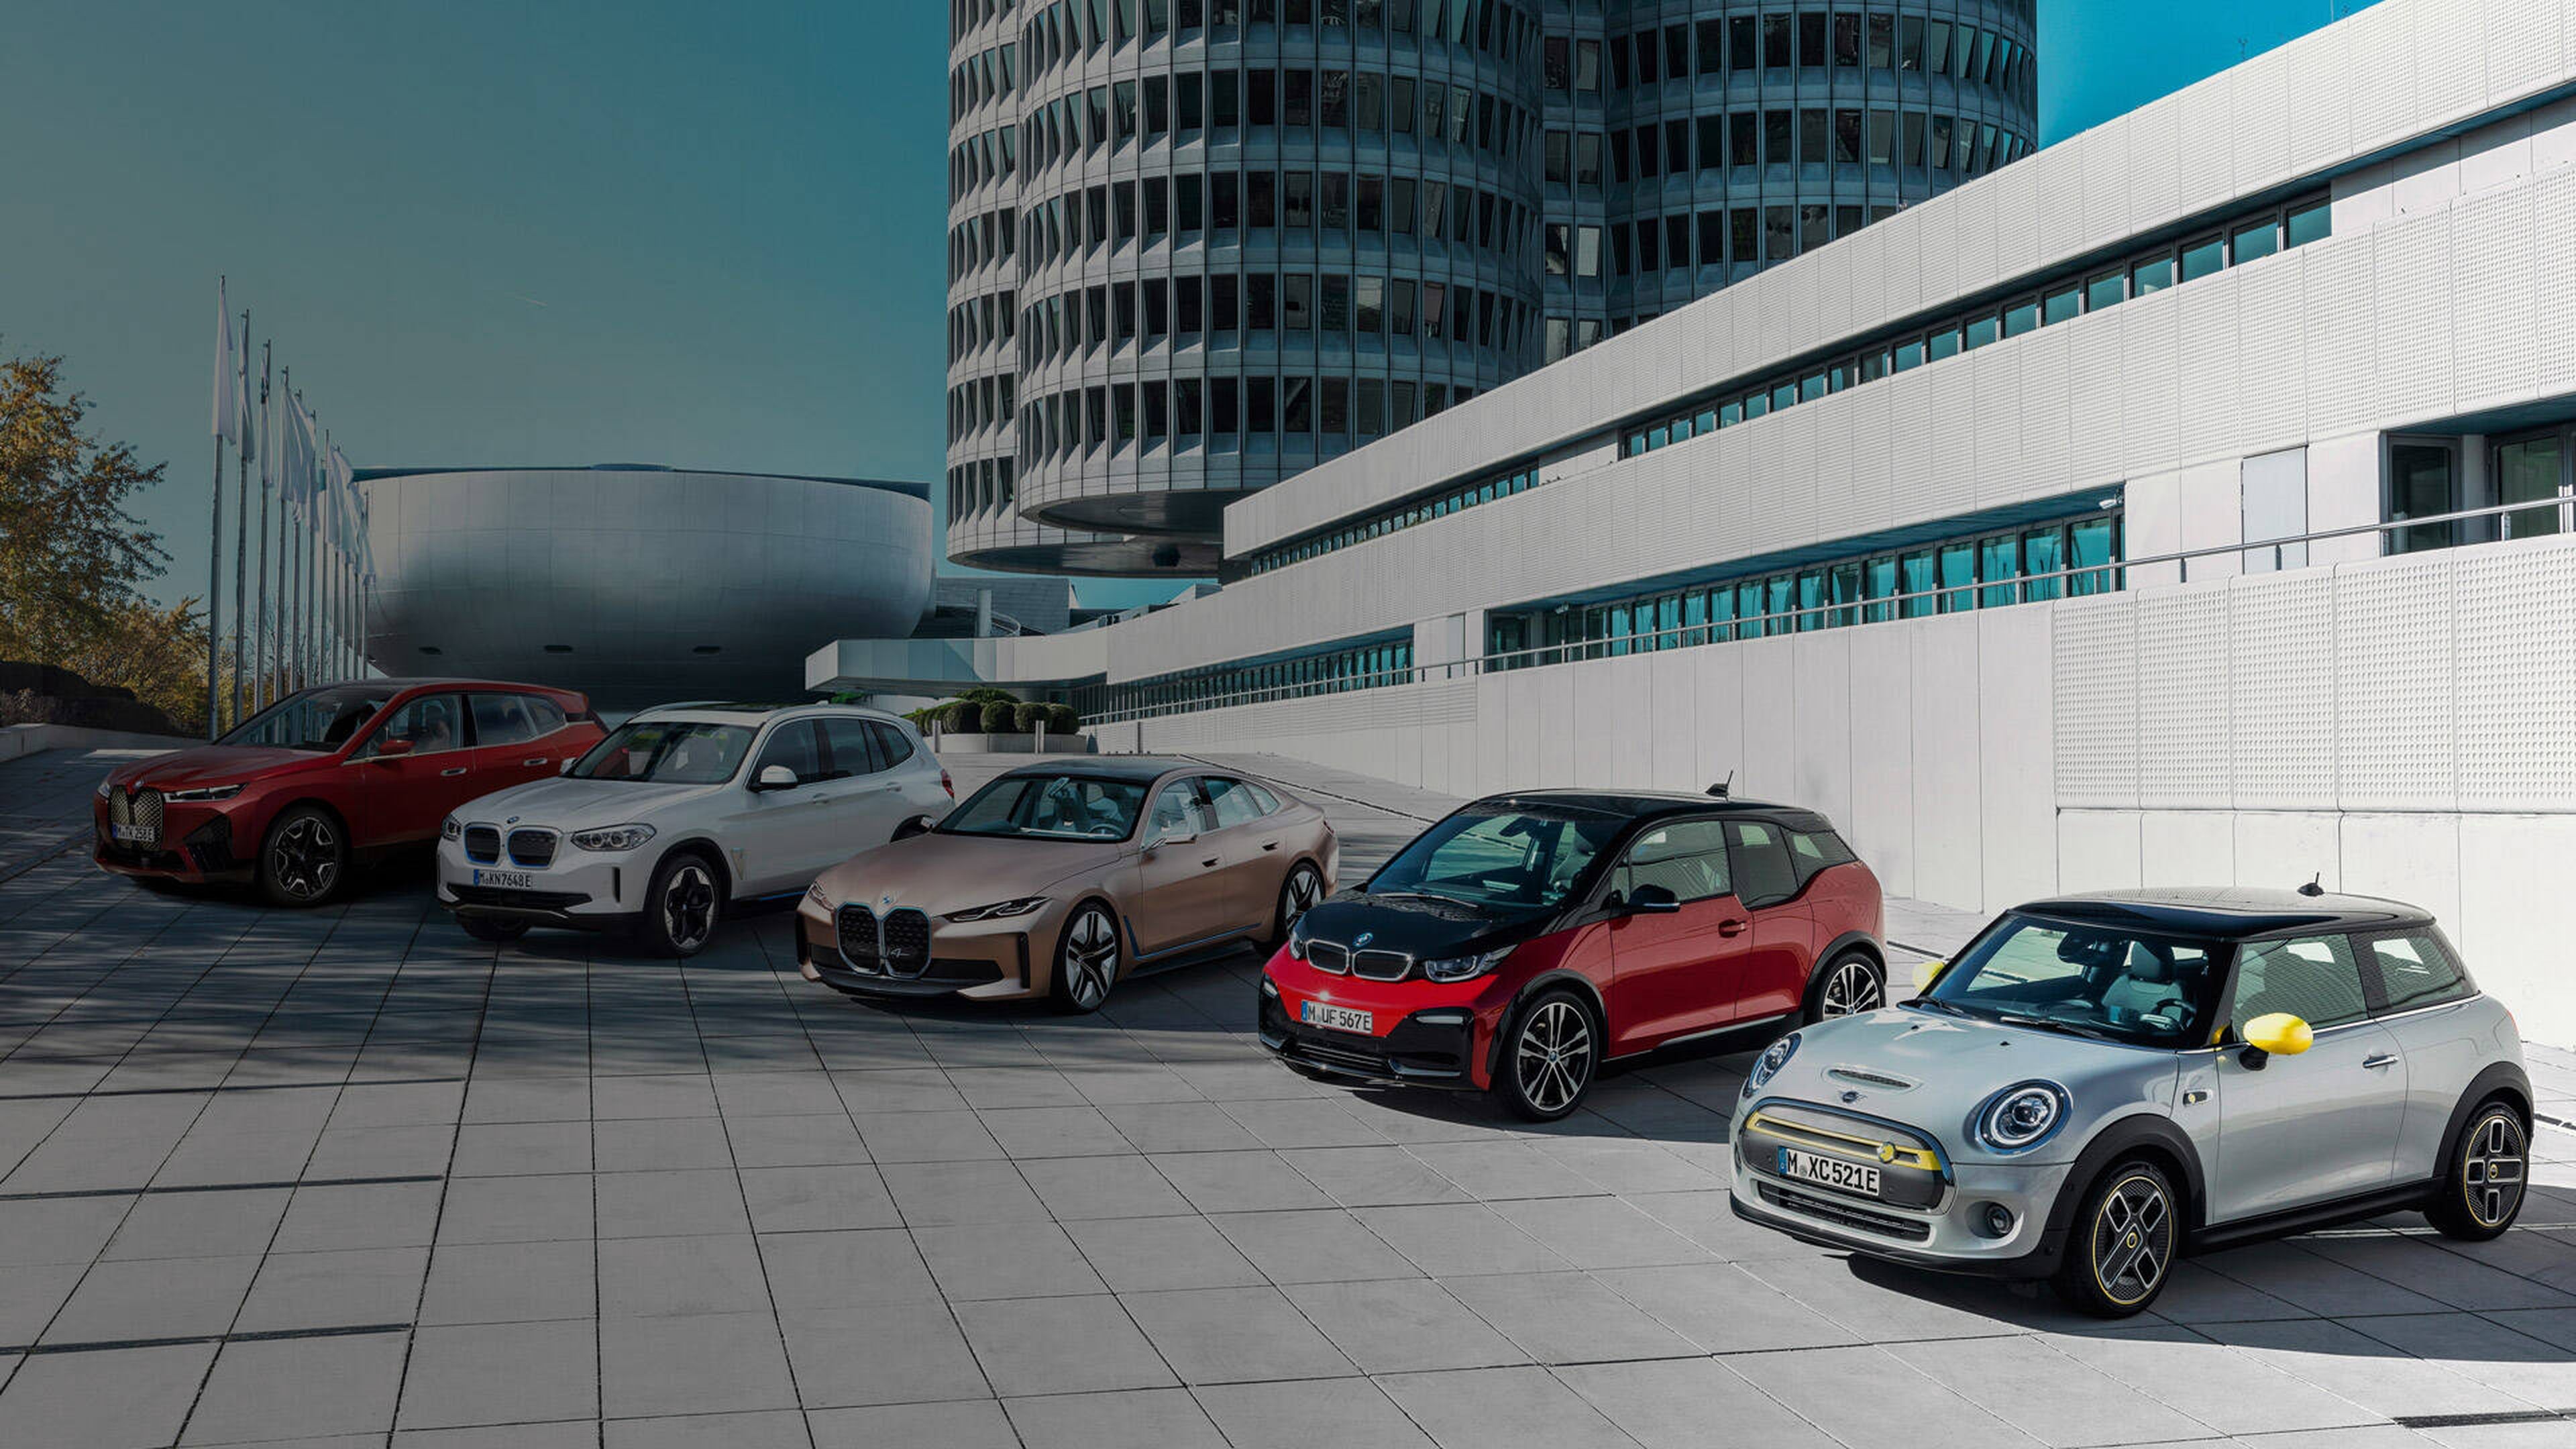 BMW marca de automóviles más sostenible